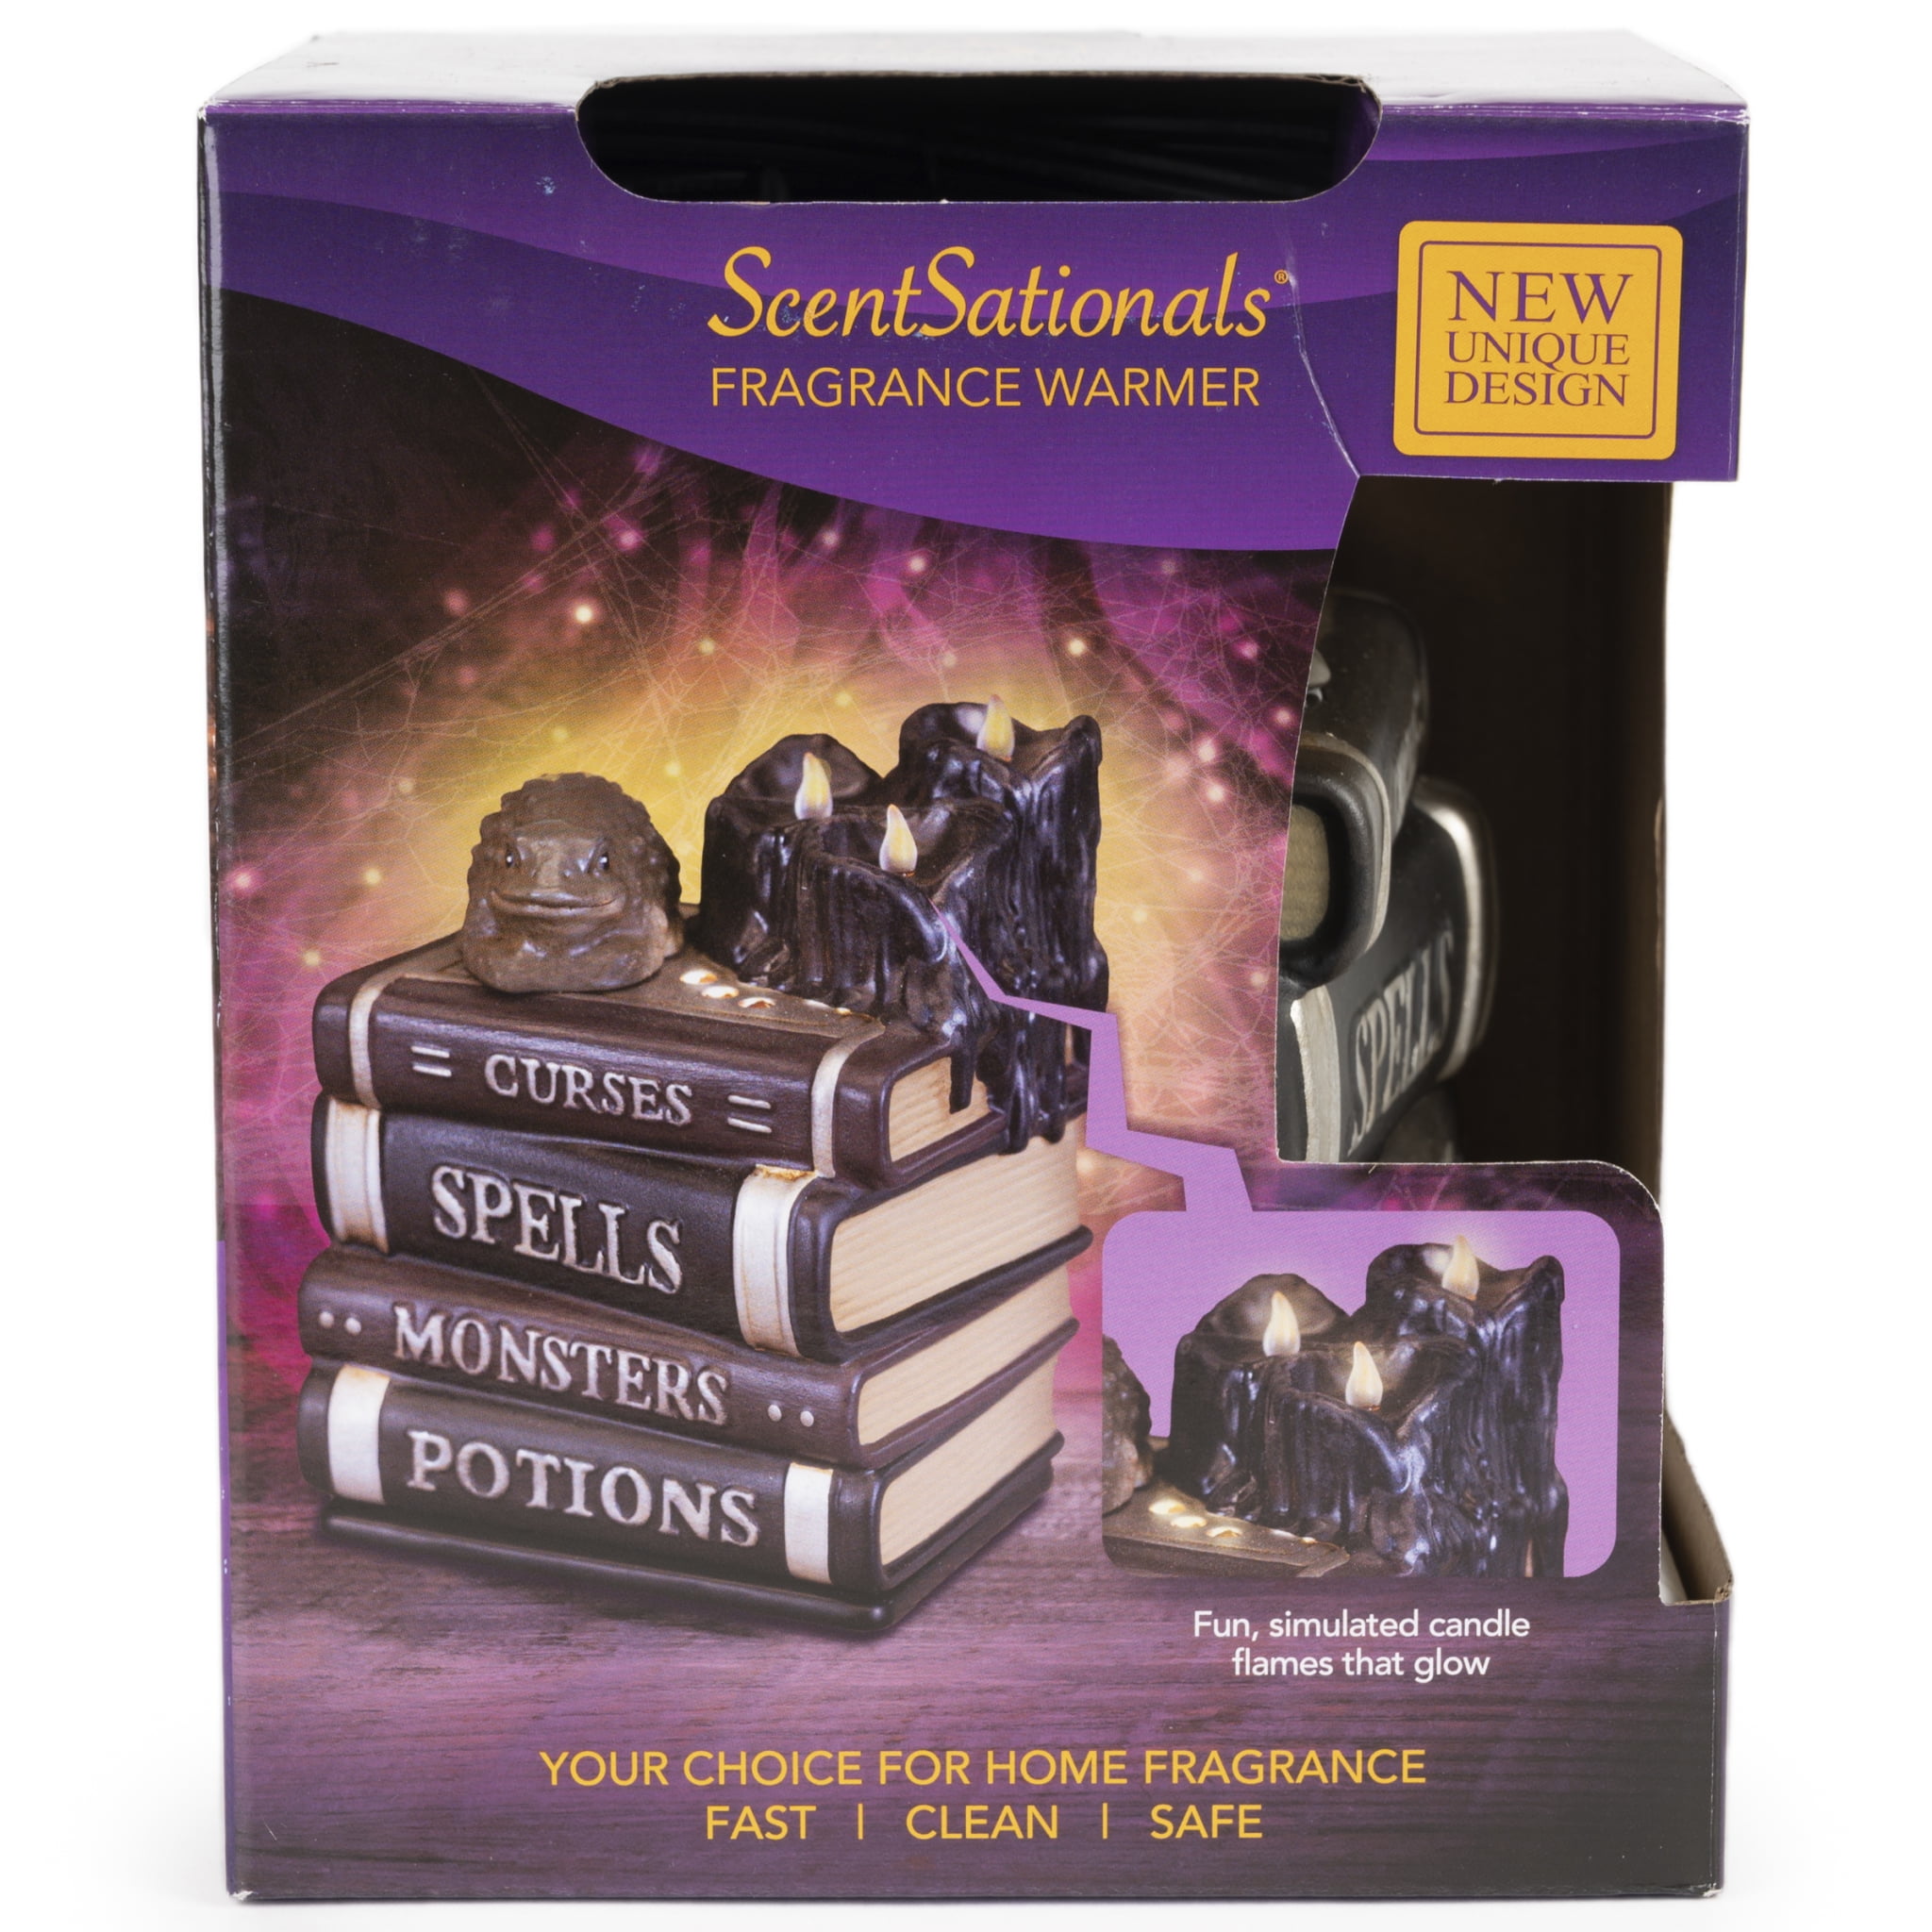 ScentSationals Book of Spells Scent Wax Warmer Halloween Hocus Pocus Witch Toad